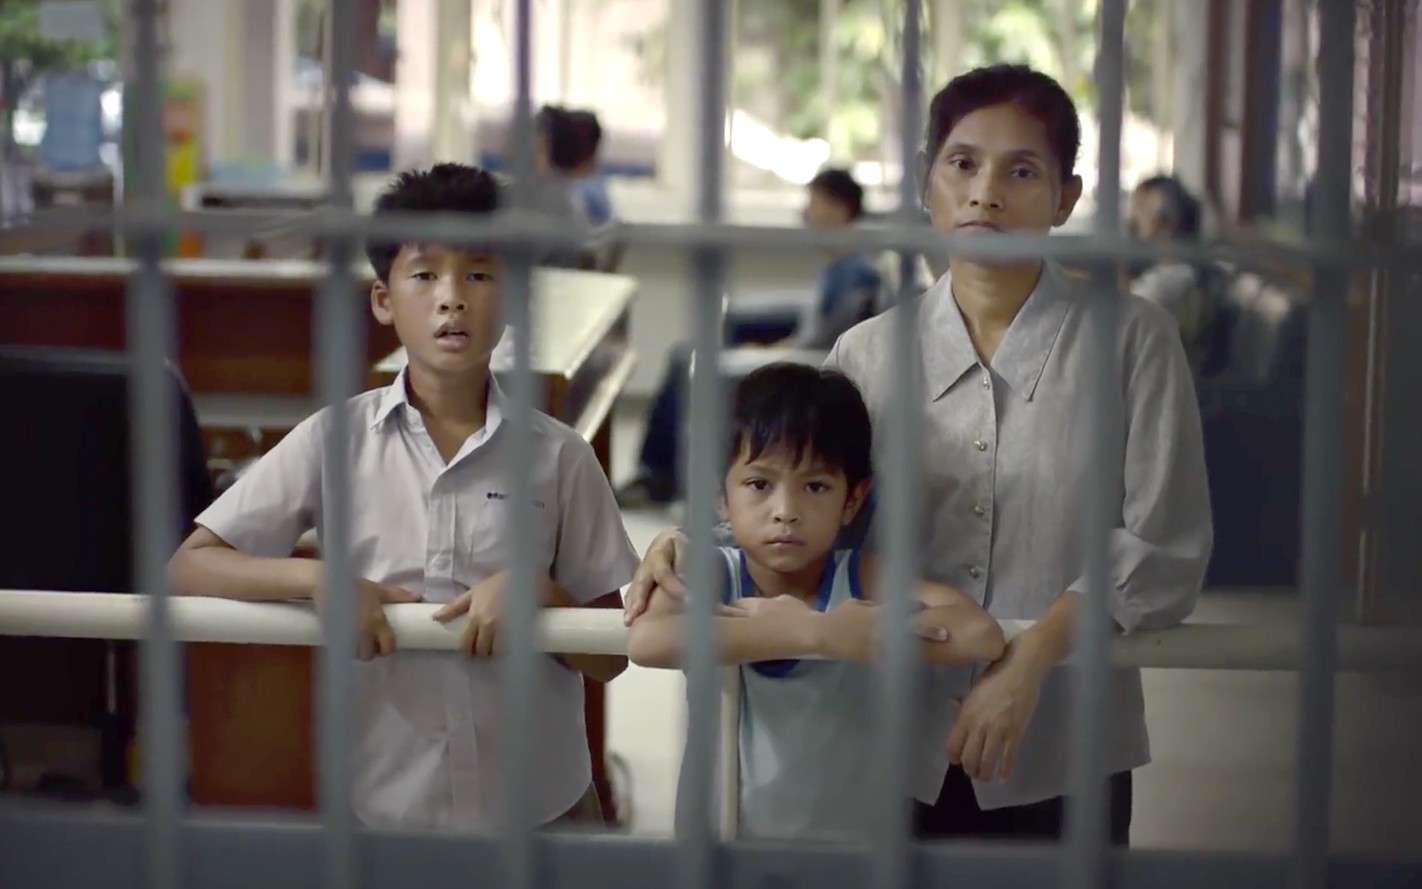 分秒之间泰国催泪广告《满盘皆输》